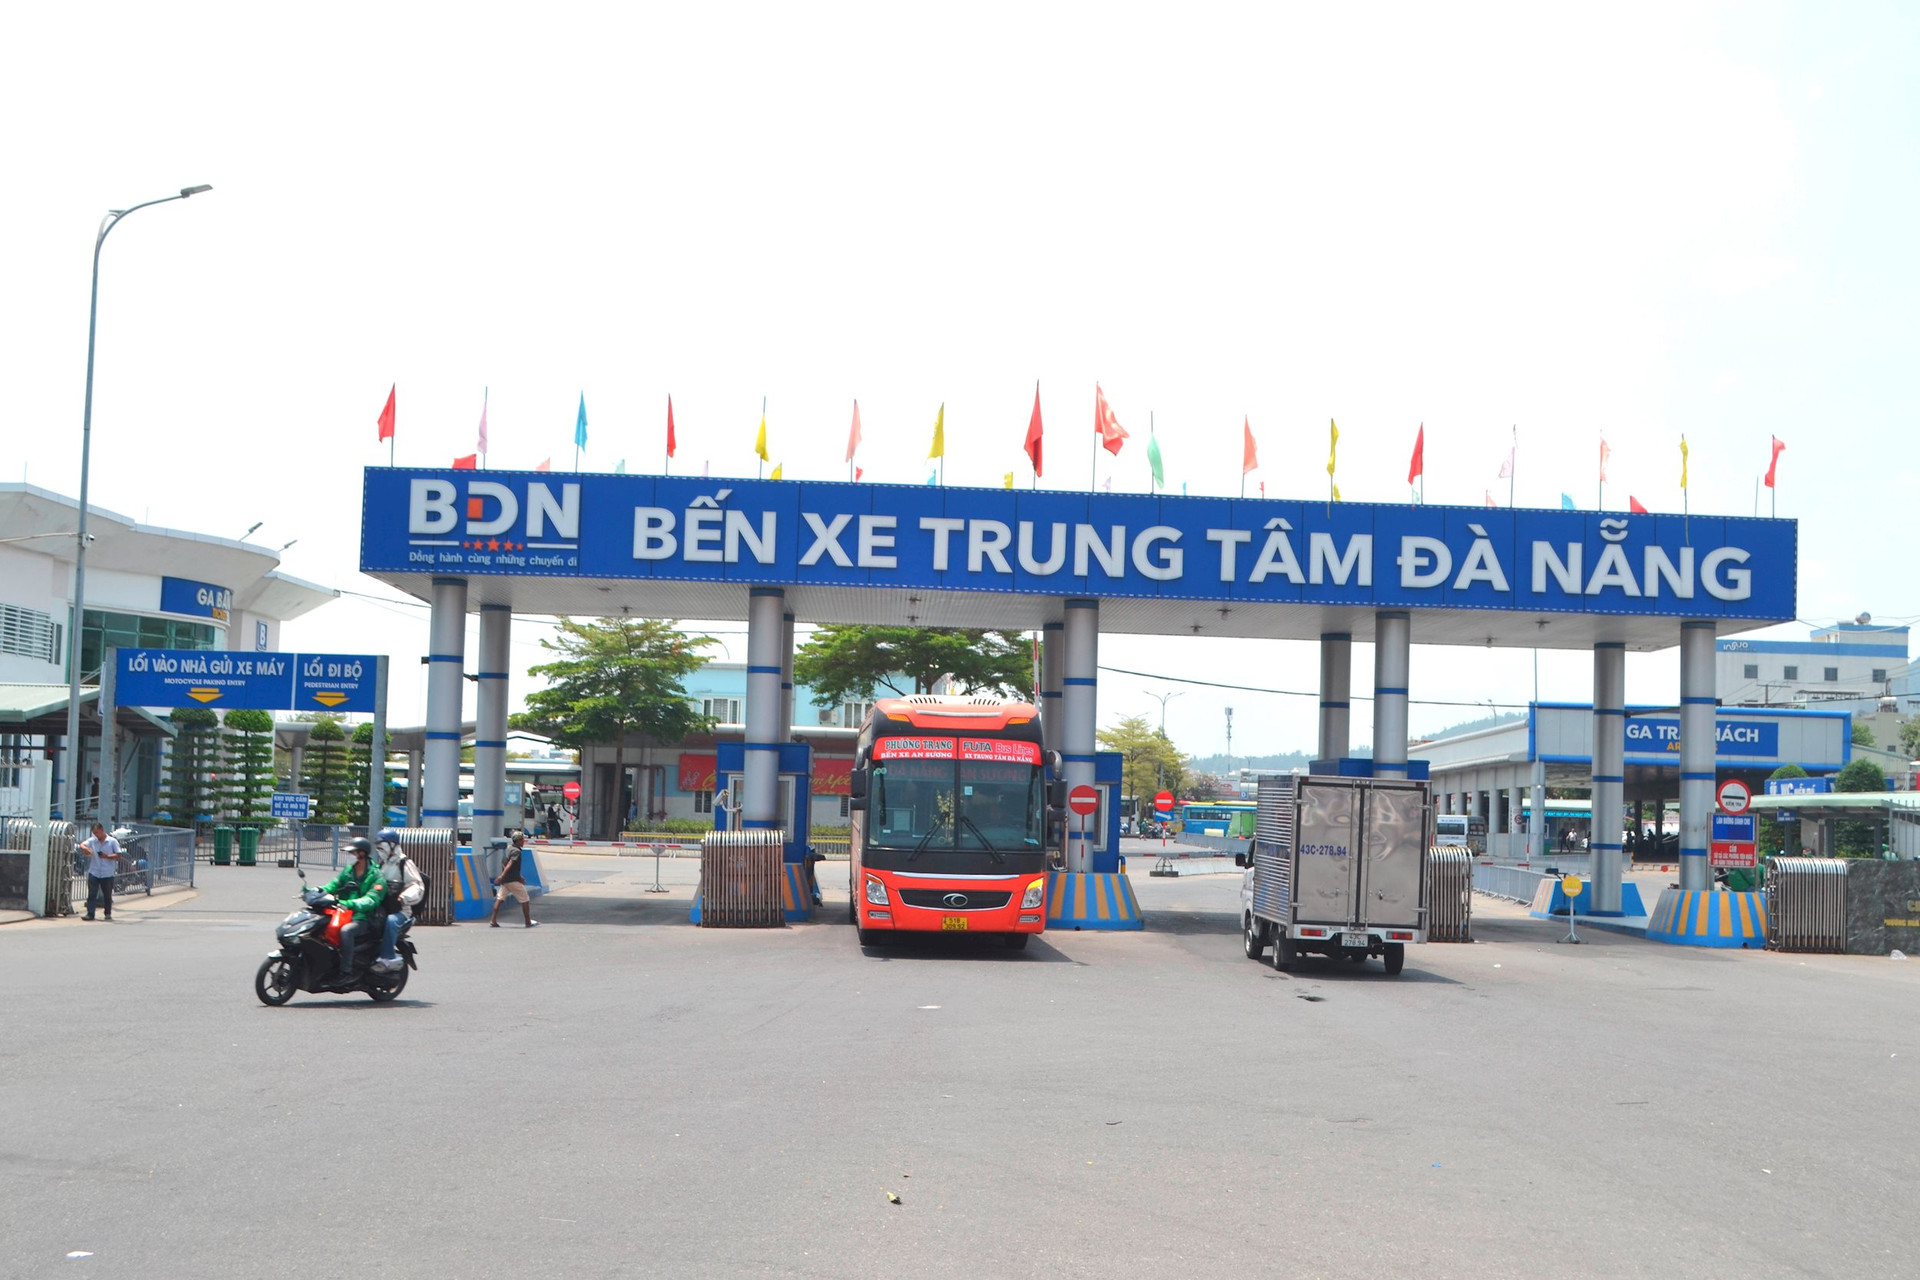 Bến xe trung tâm Đà Nẵng là địa điểm tổ chức công bố đưa vào vận hành. Ảnh: C.T